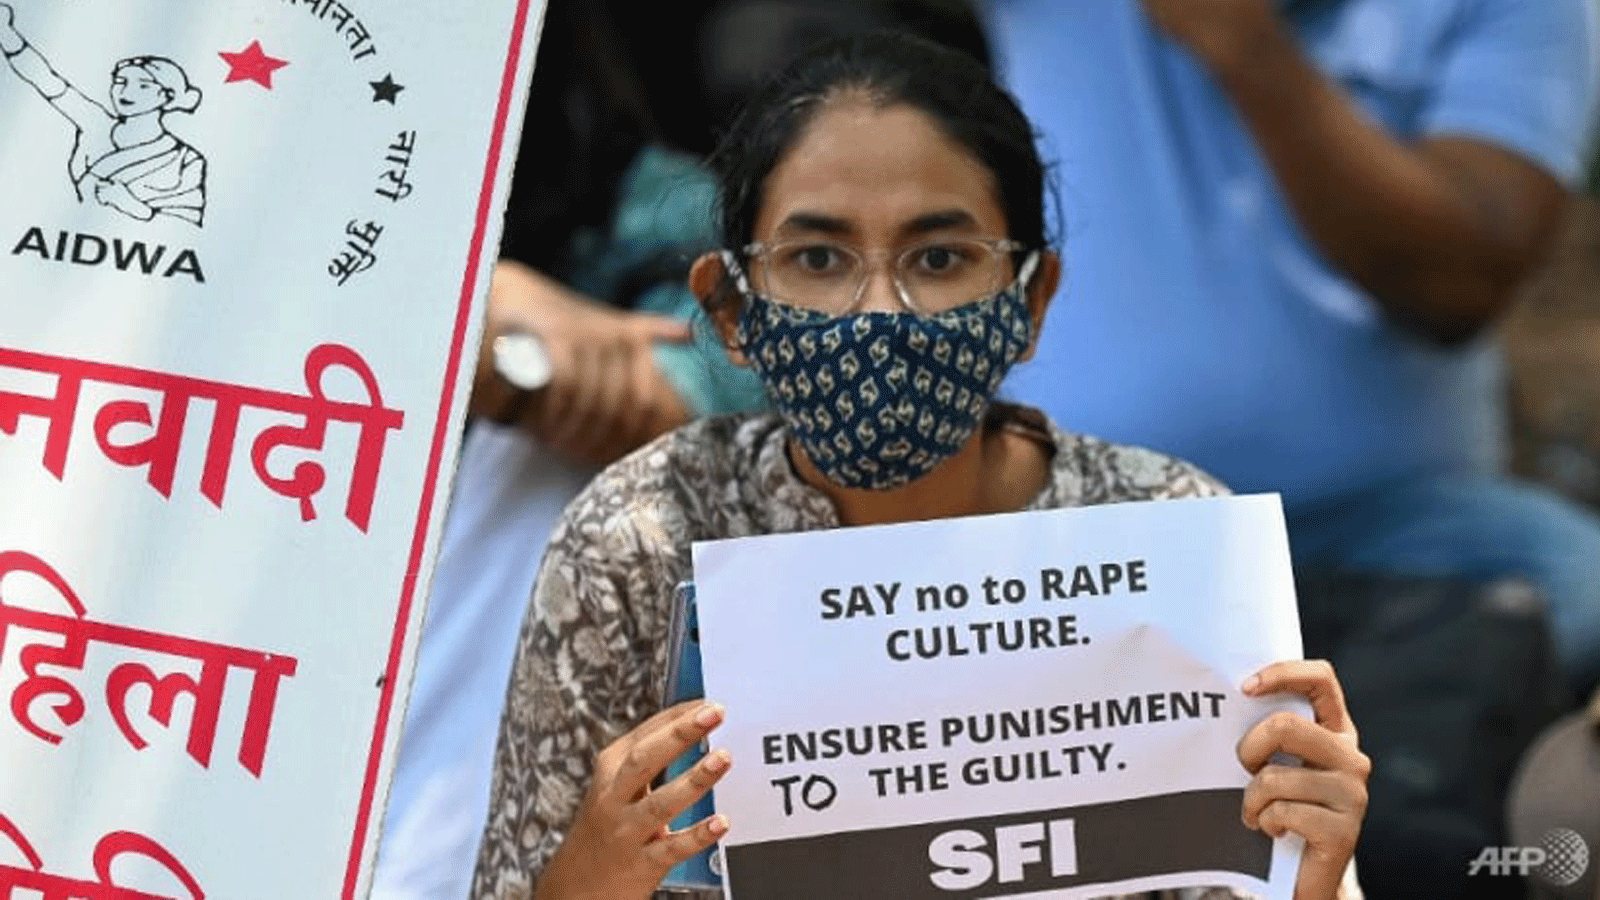 ناشطون من اتحاد الطلاب في الهند (SFI) وجمعية النساء الديمقراطيات لعموم الهند (AIDWA) يحملون لافتات احتجاج في نيودلهي في 4 آب/ أغسطس 2021، ضد الاغتصاب والقتل مطالبين بمعاقبة المذنبين